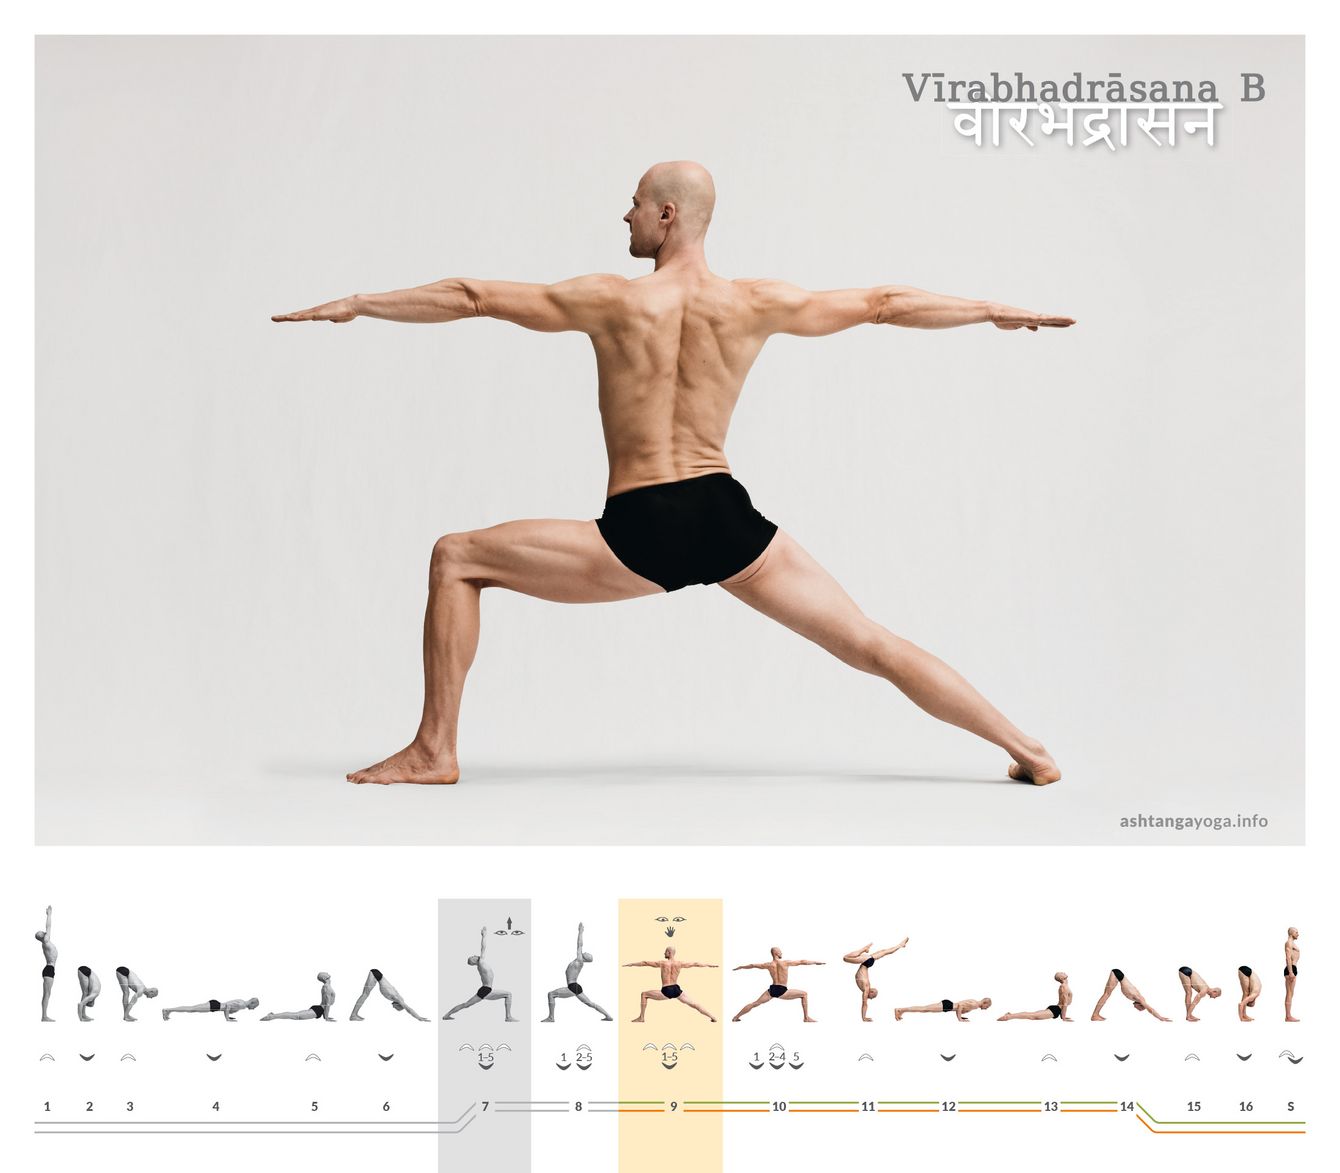 Mit dem Übergang von Virabhadrasana A zu B erweitert der Übende seinen Stand, senkt die Arme und breitet diese horizontal nach vorne und hinten aus – „Haltung des mächtigen Helden“